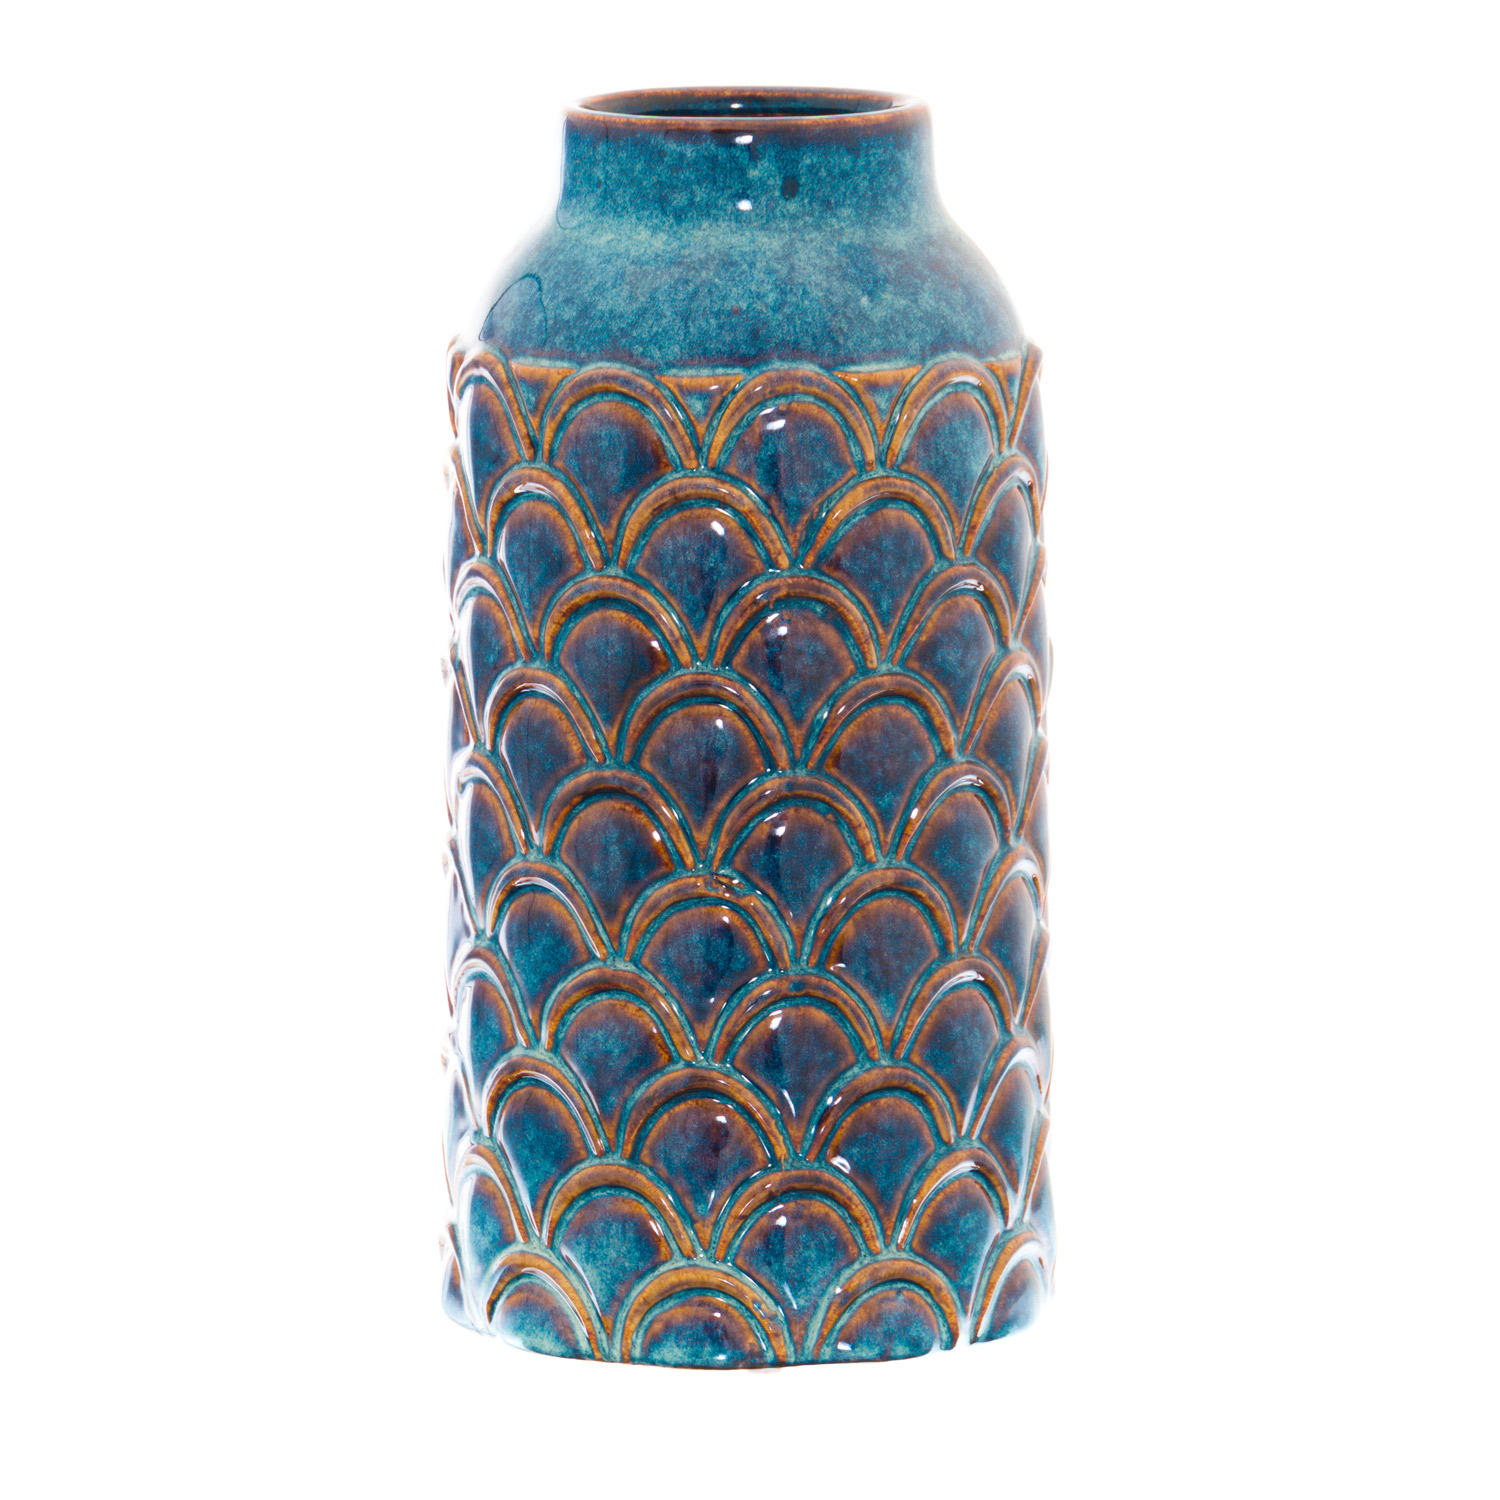 Seville Collection Large Indigo Scalloped Vase - Image 1